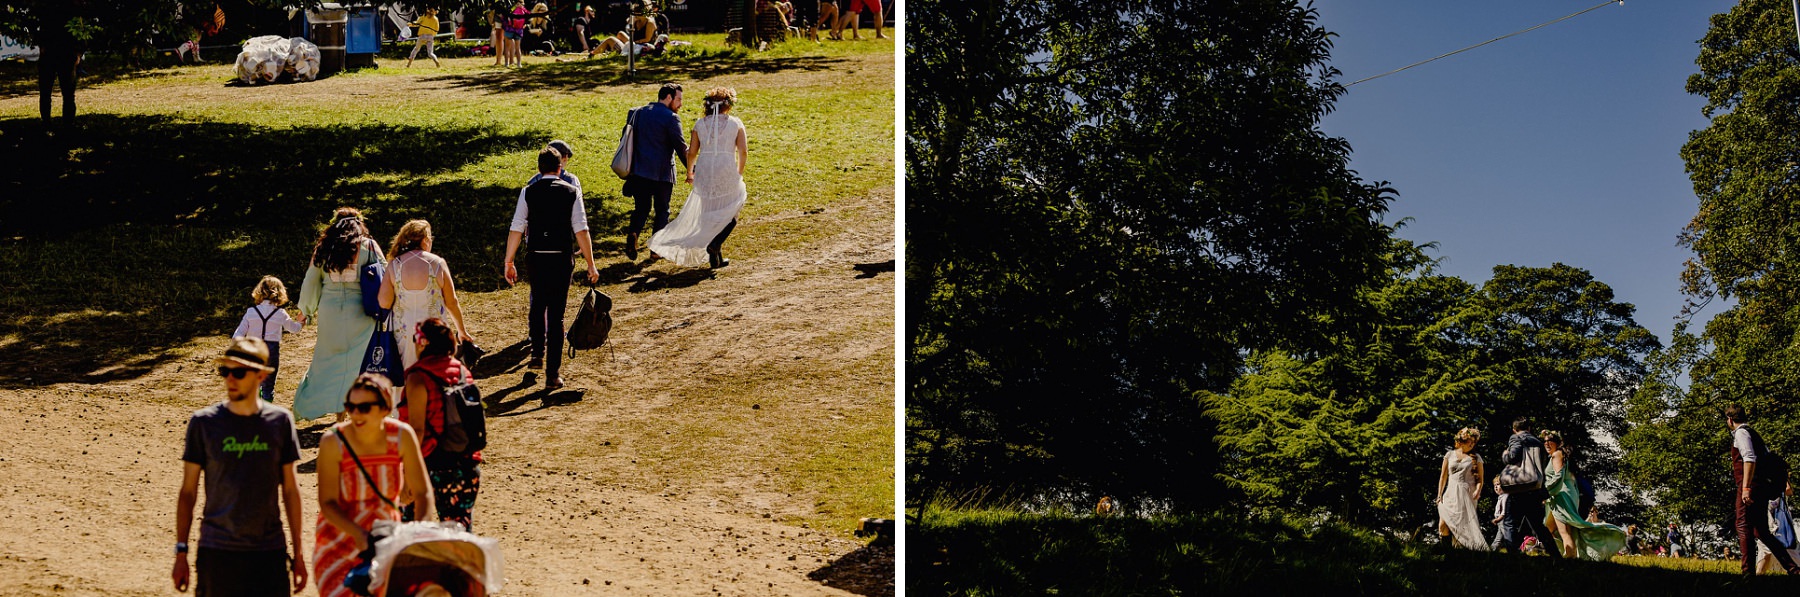 bride and groom walking 